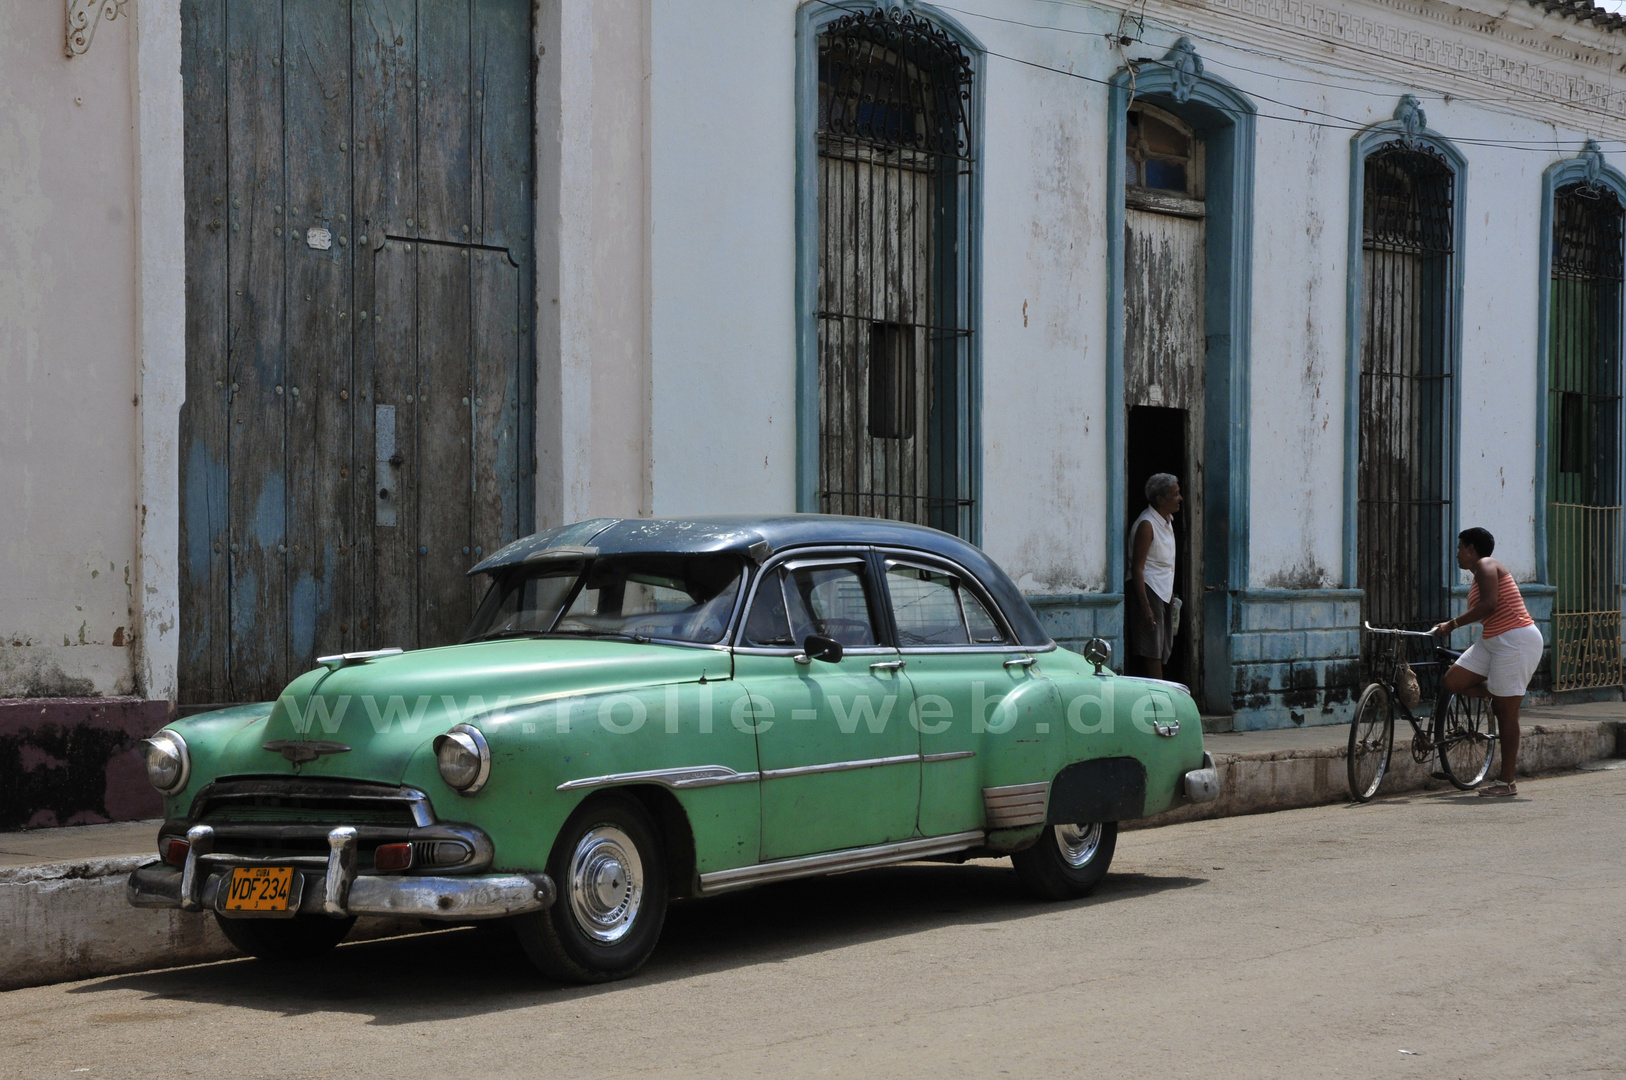 Kubanische Autos